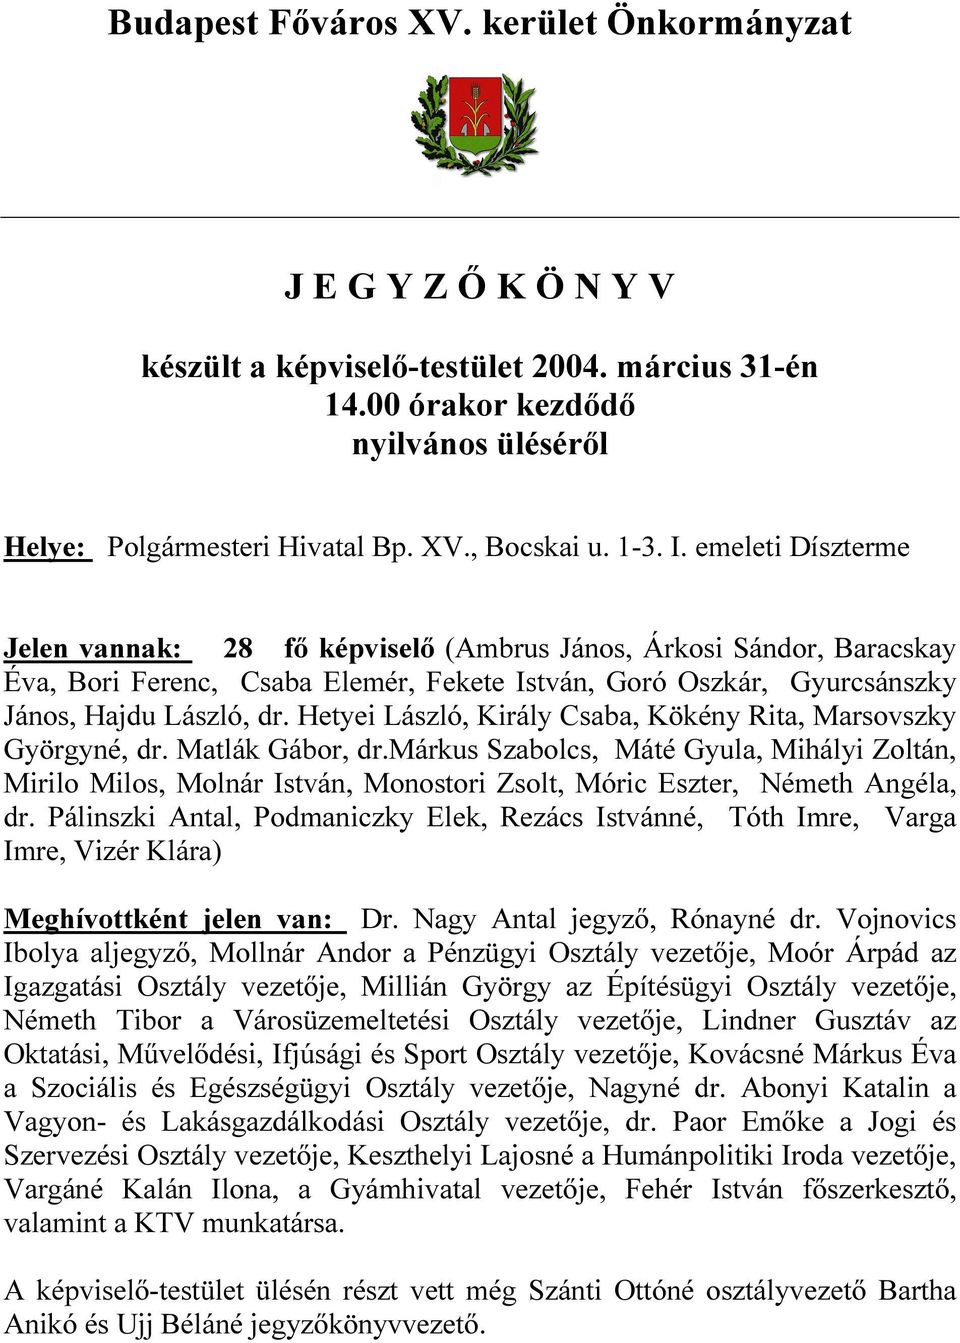 Hetyei László, Király Csaba, Kökény Rita, Marsovszky Györgyné, dr. Matlák Gábor, dr.